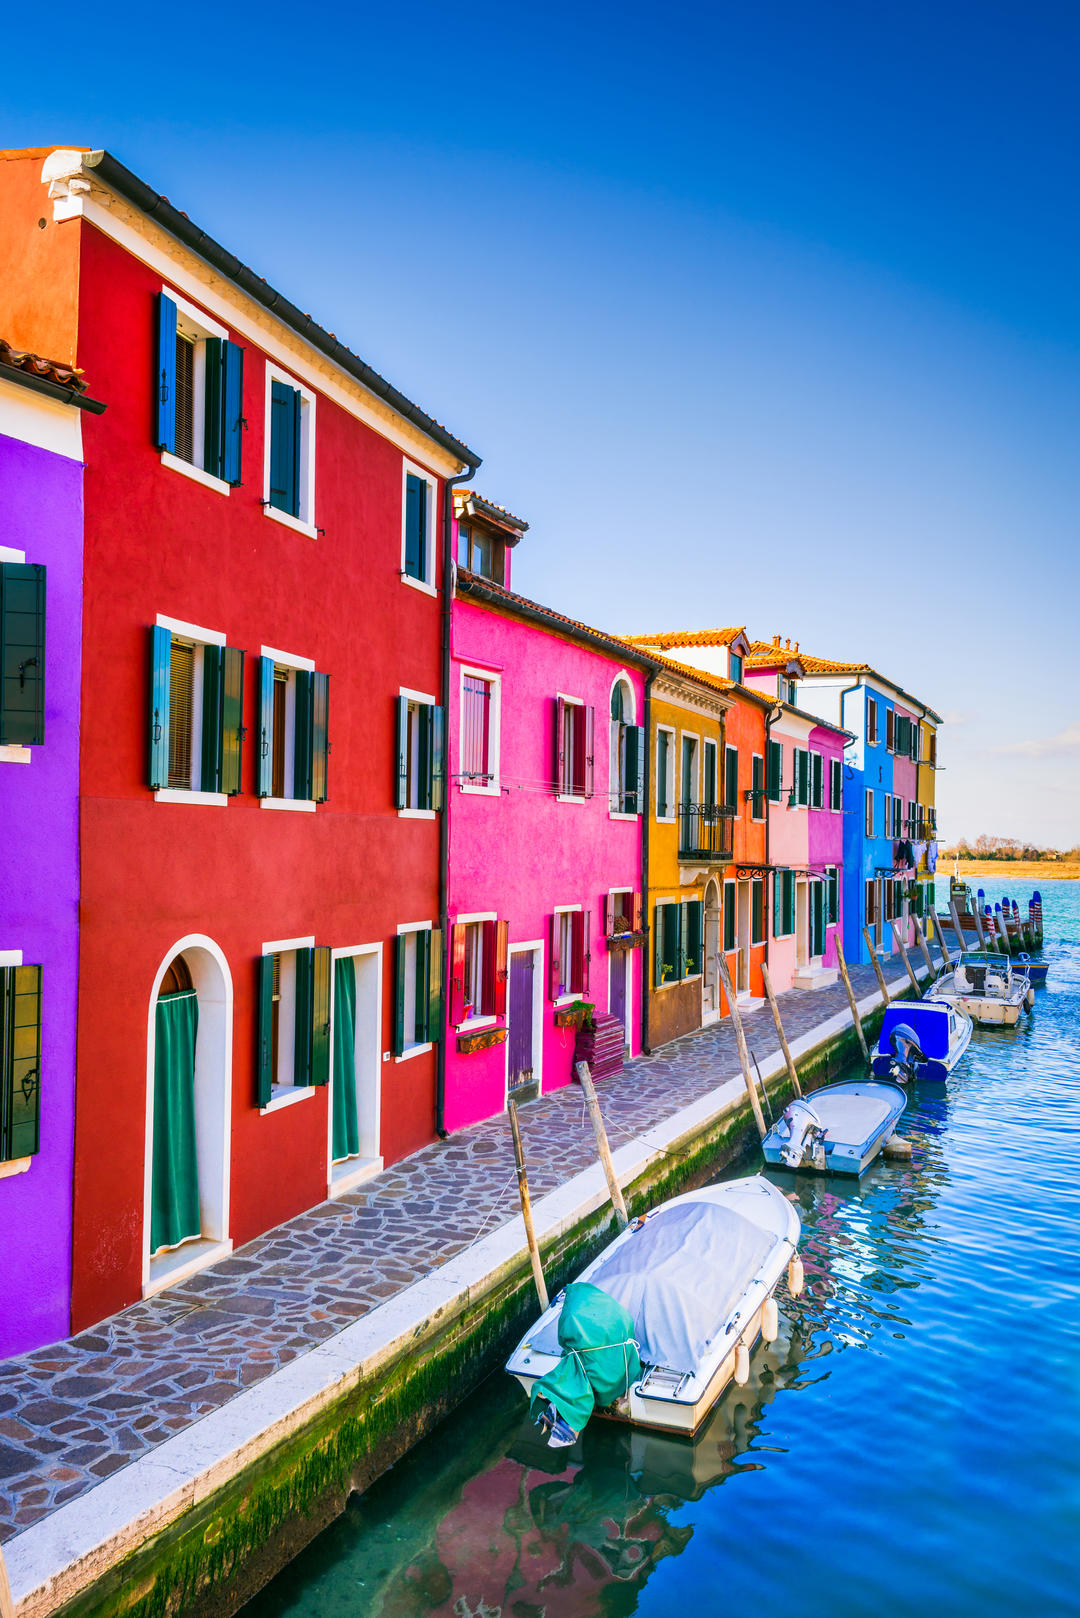 Човни та барвисті будинки на каналі